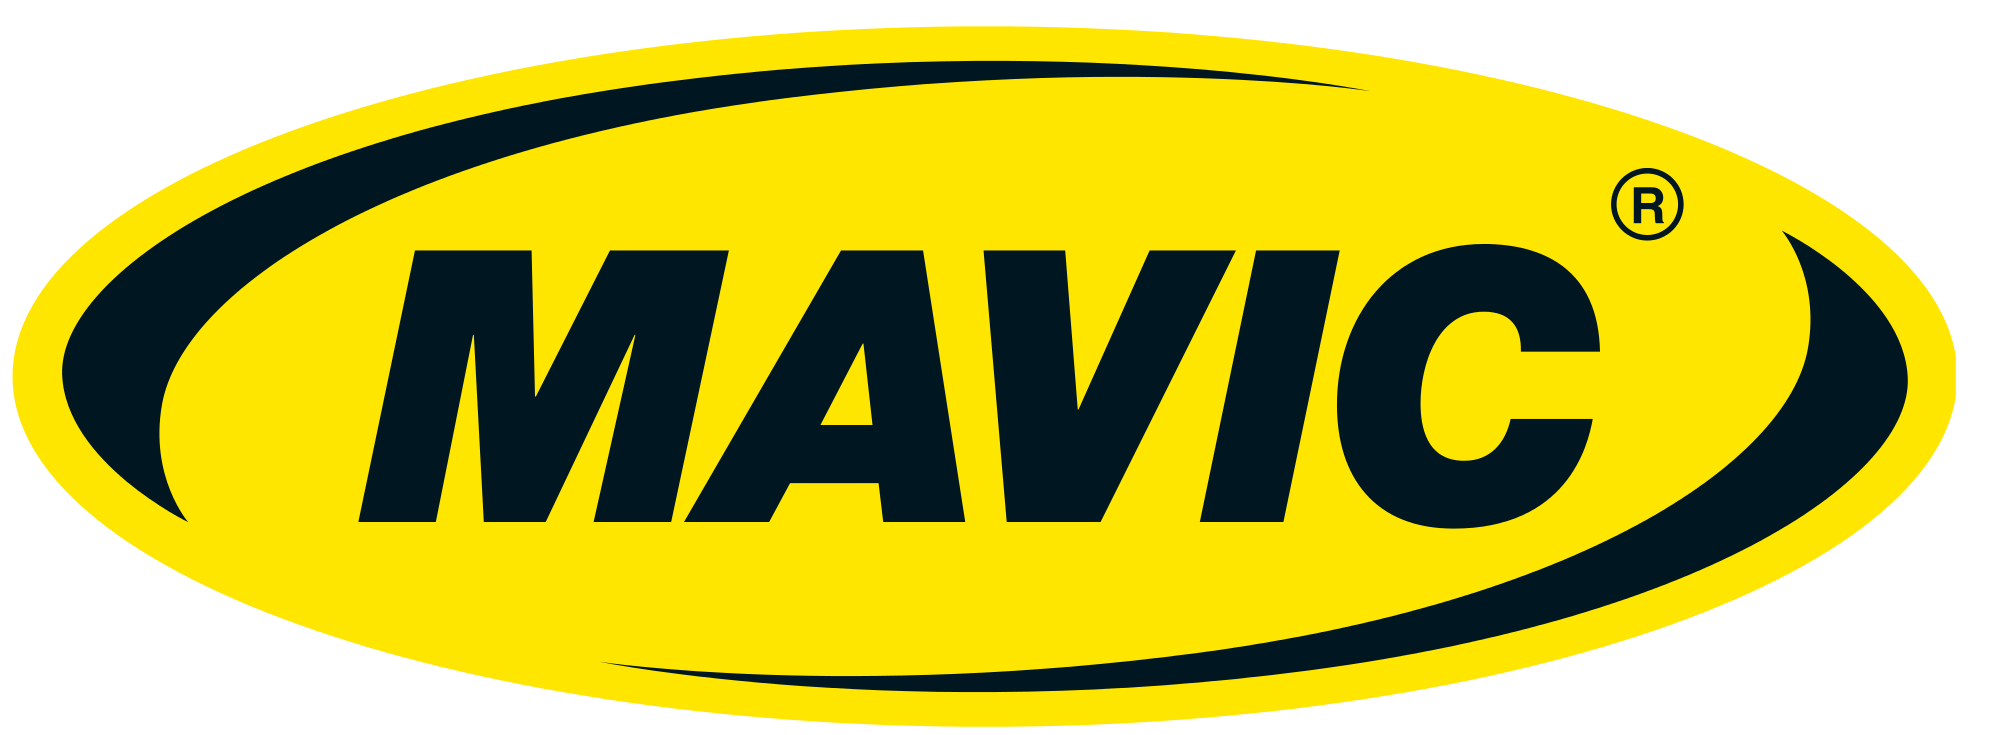 Mavic Logo - File:Mavic-logo.svg - Wikimedia Commons